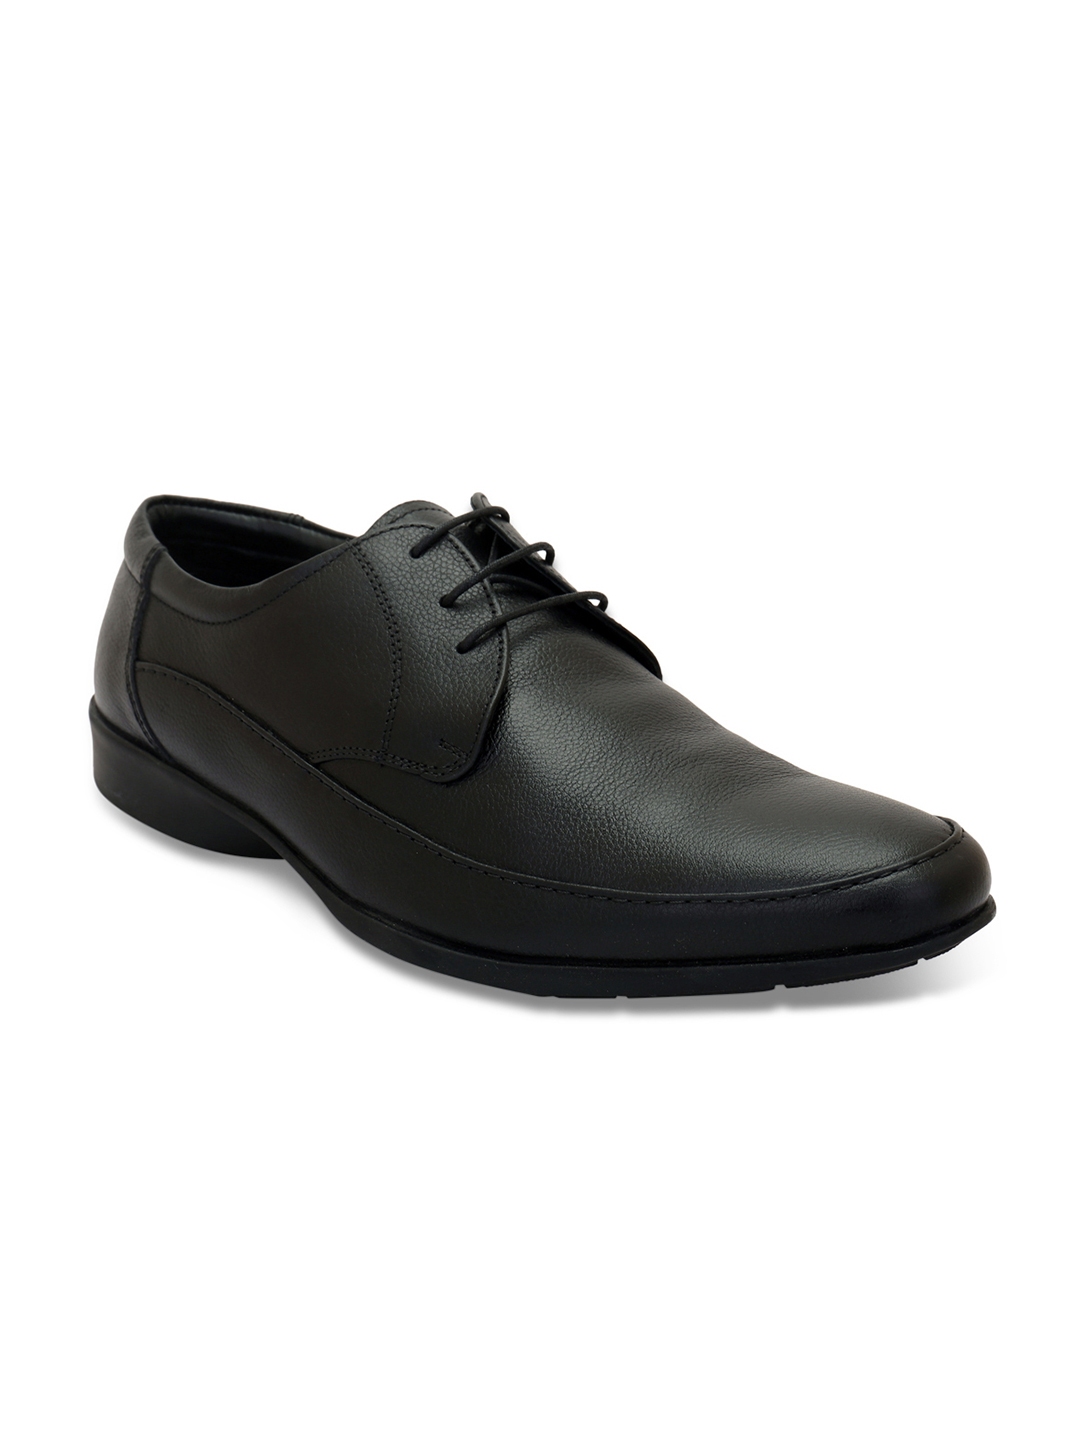 Buy Pelle Albero Black Men Leather Formal Derbys - Formal Shoes for Men ...